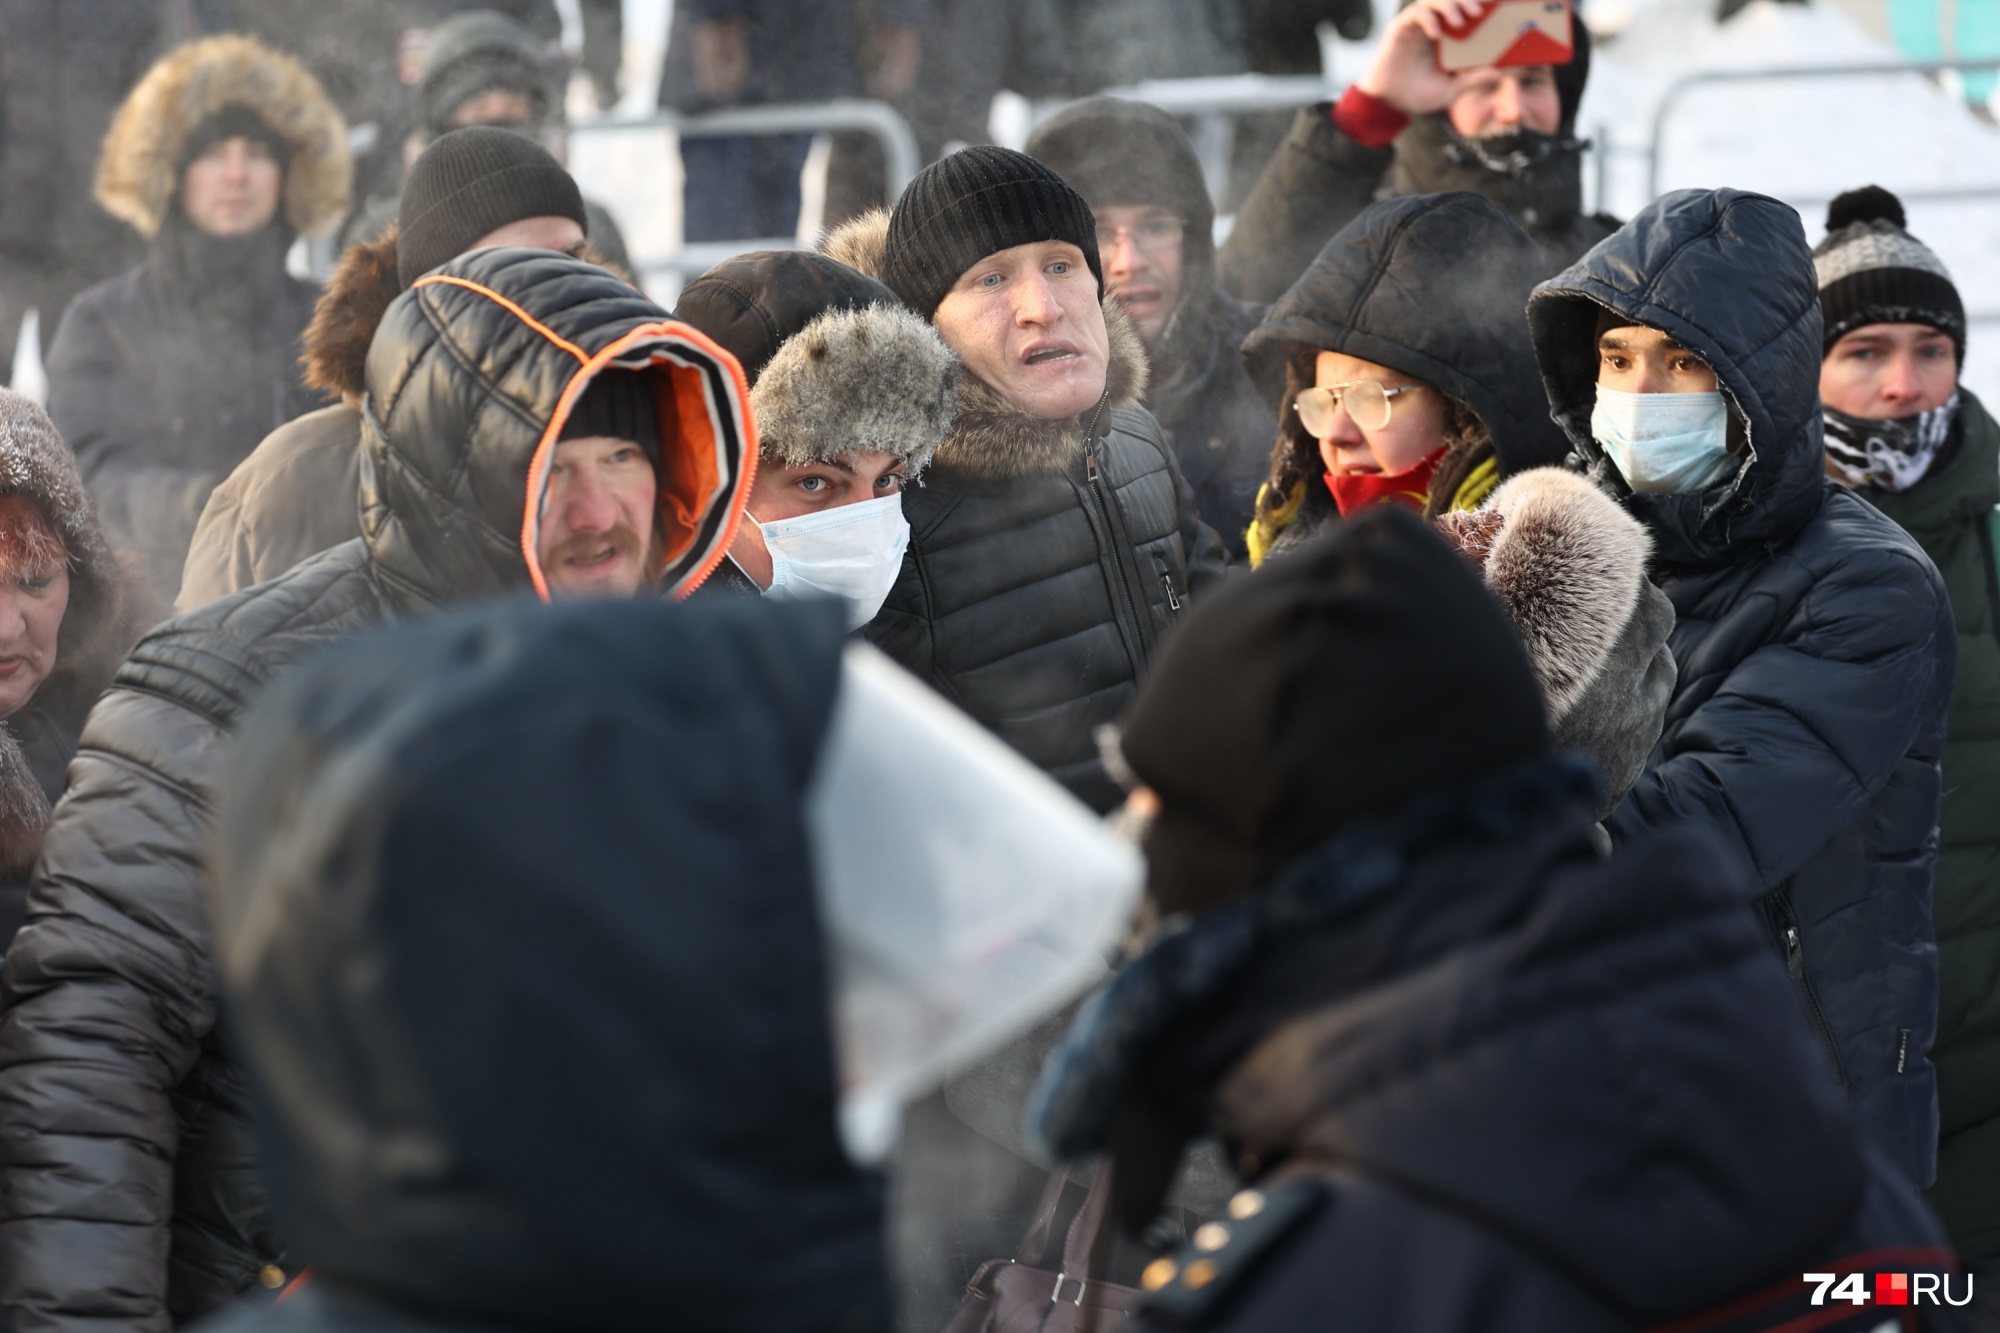 Иван Худяков не отрицал, что участвовал в шествии. Вот он на фото в черной шапке стоит в центре толпы